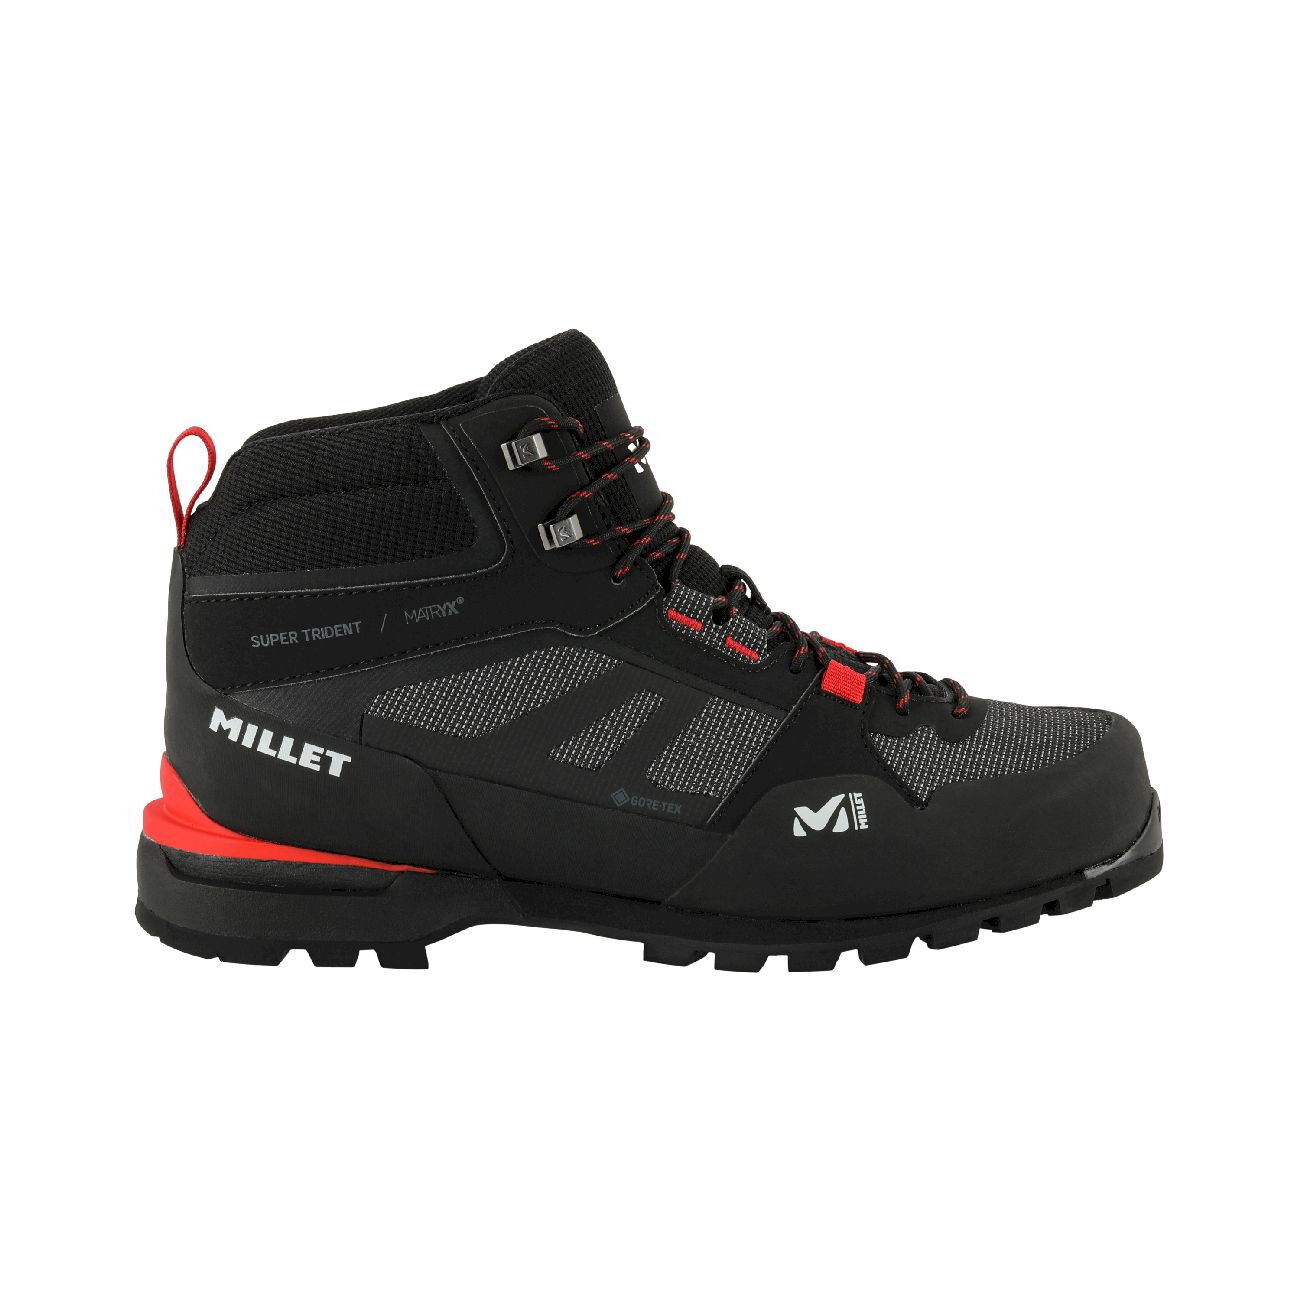 Millet Super Trident Matryx GTX - Approach shoes - Men's